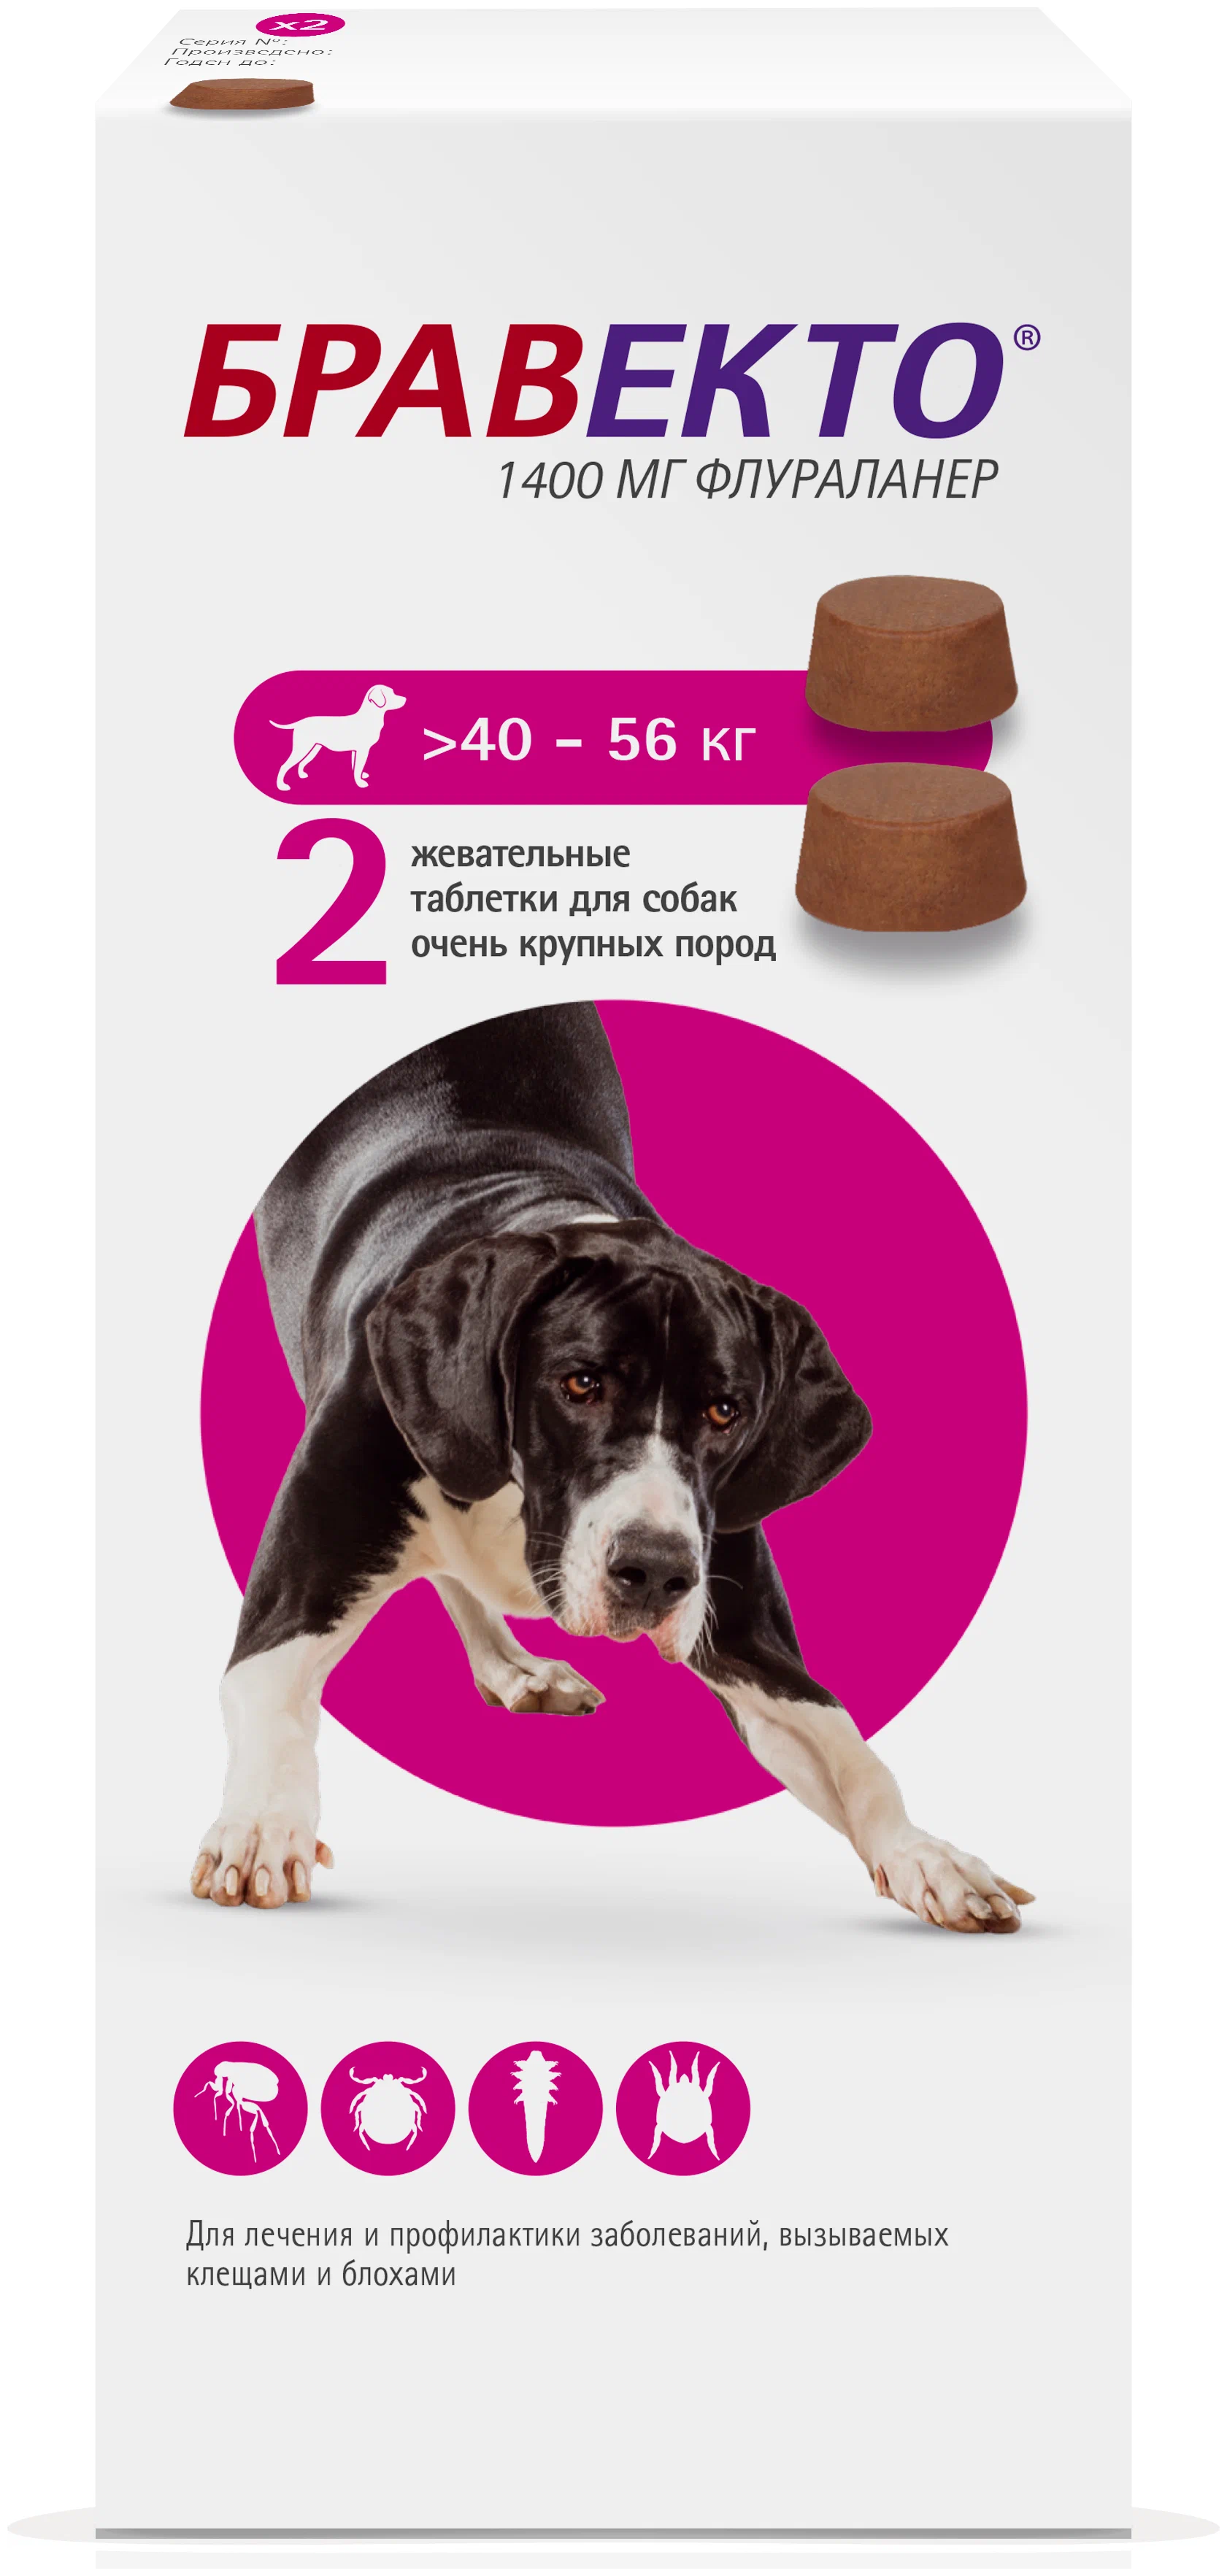 Бравекто таблетка для собак 40 56 купить. Бравекто 1400мг таблетка инсектоакарицидная д/собак 40-56кг. Бравекто таблетки для собак 40-56. Бравекто 1400 мг д/собак 40-56 кг. Бравекто для собак 40-56 2.